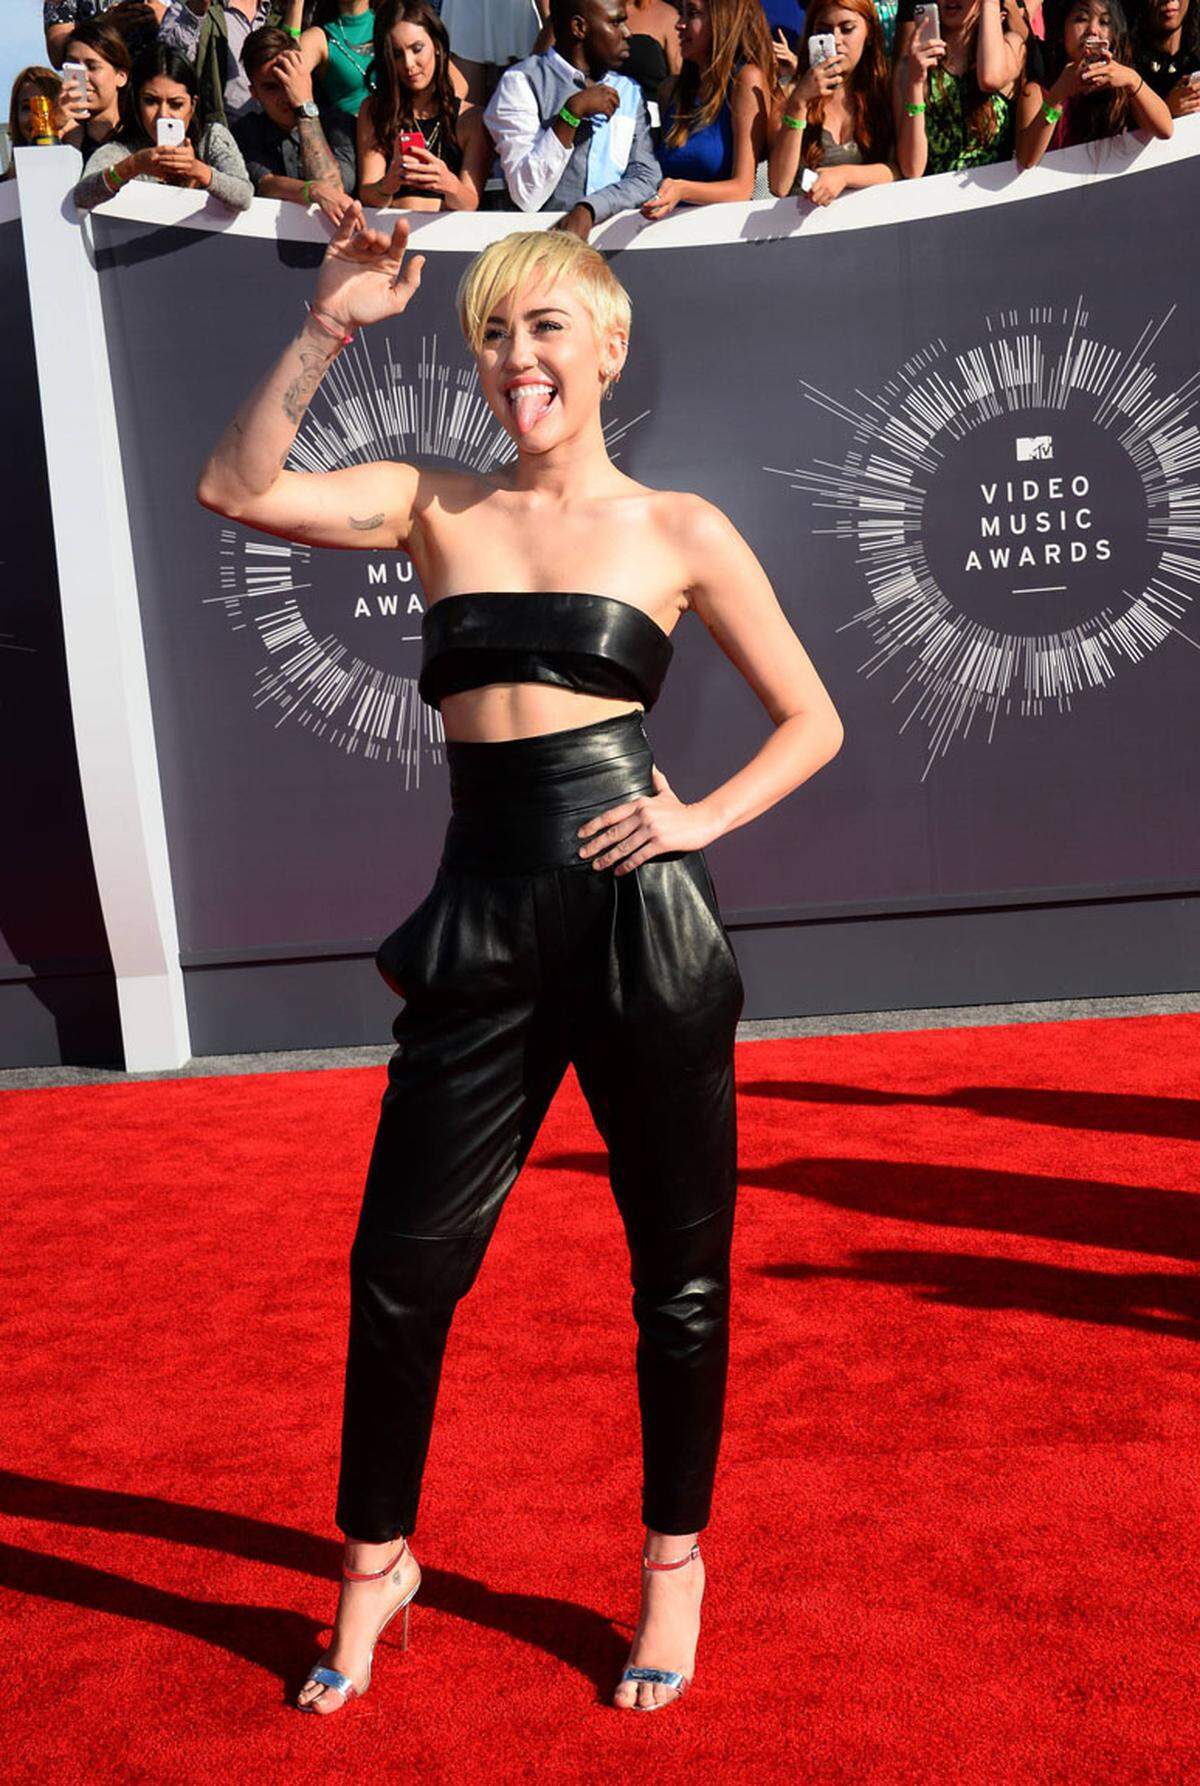 Unzählige Promis, darunter auch Miley Cyrus, zeigen jetzt wieder ihre Bauchmuskeln.